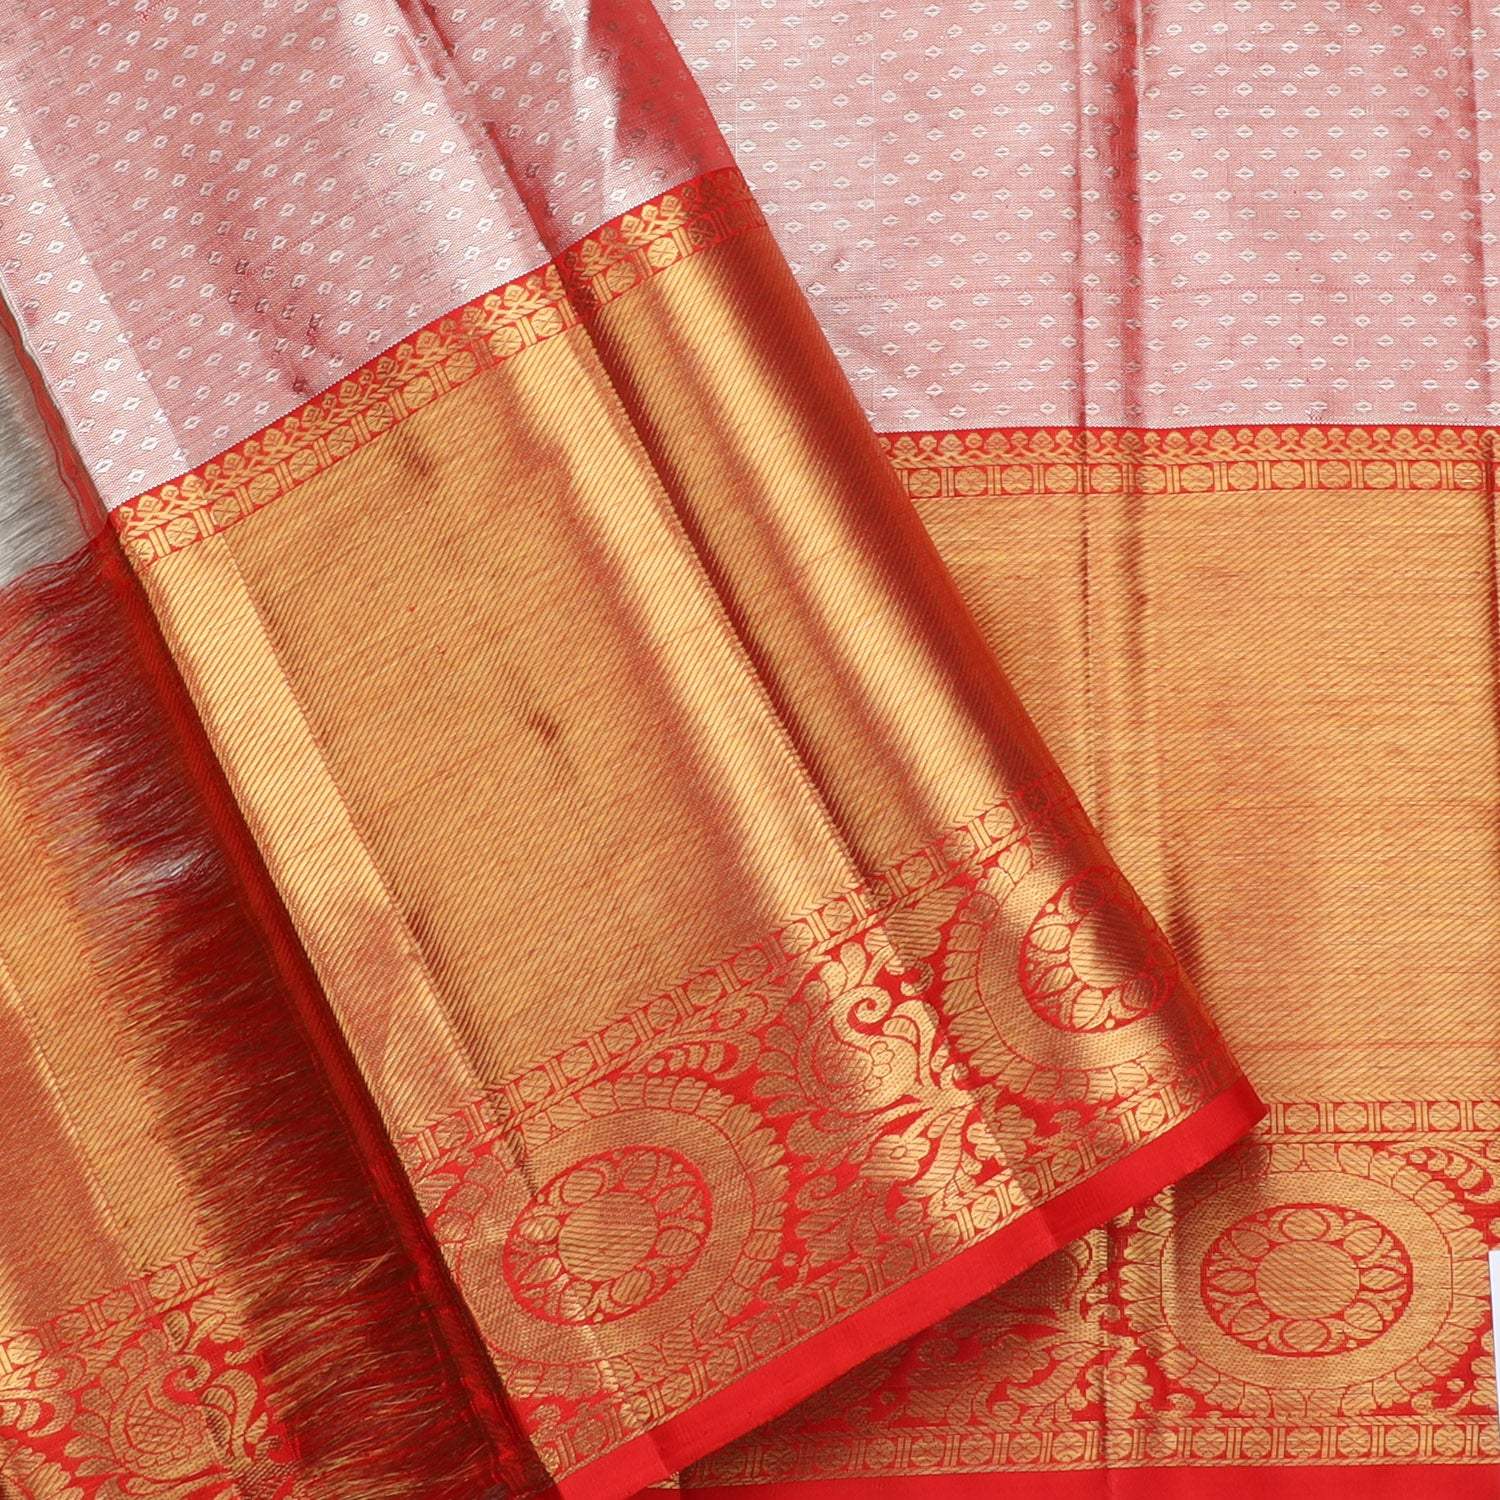 Pastel Blue Tissue Kanjivaram Silk Saree With Floral Pattern - Singhania's